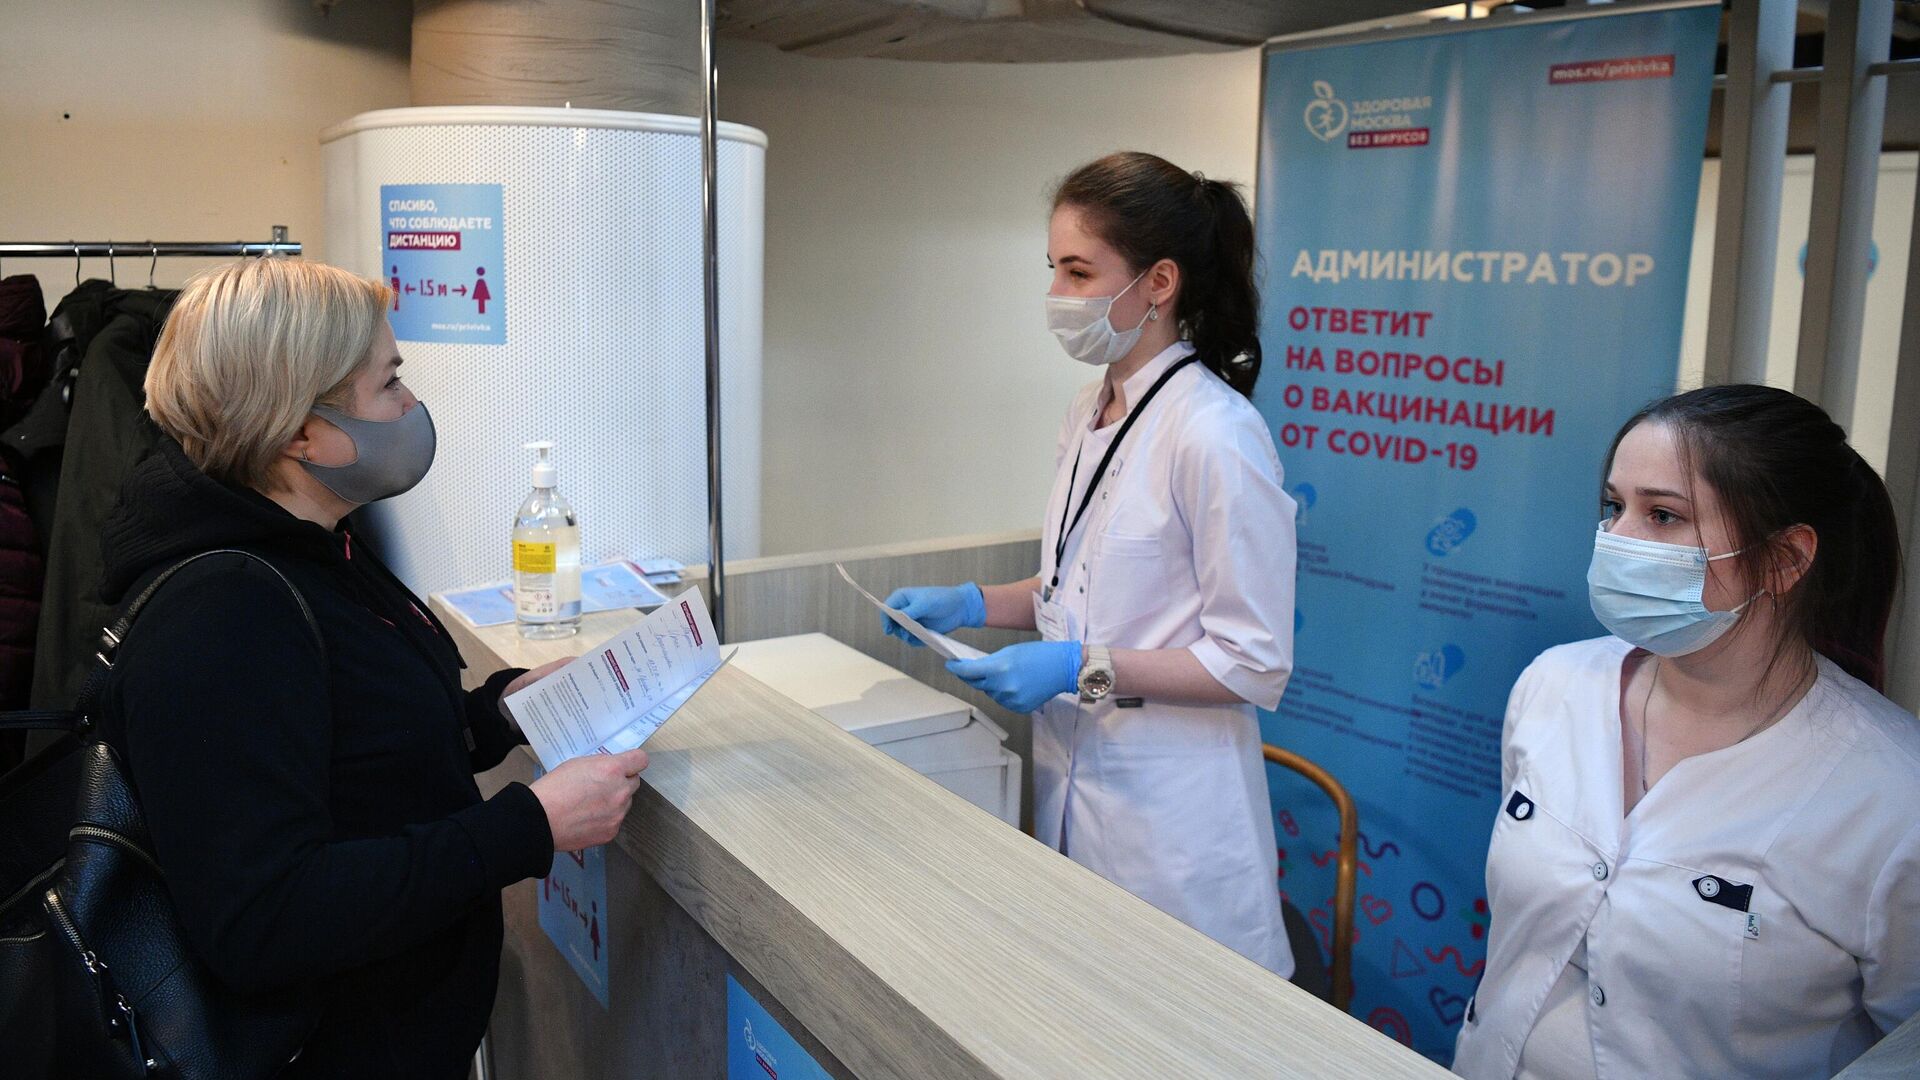 Женщина получает сертификат о вакцинации от СOVID-19 на территории фудмолла Депо.Москва - РИА Новости, 1920, 23.01.2021